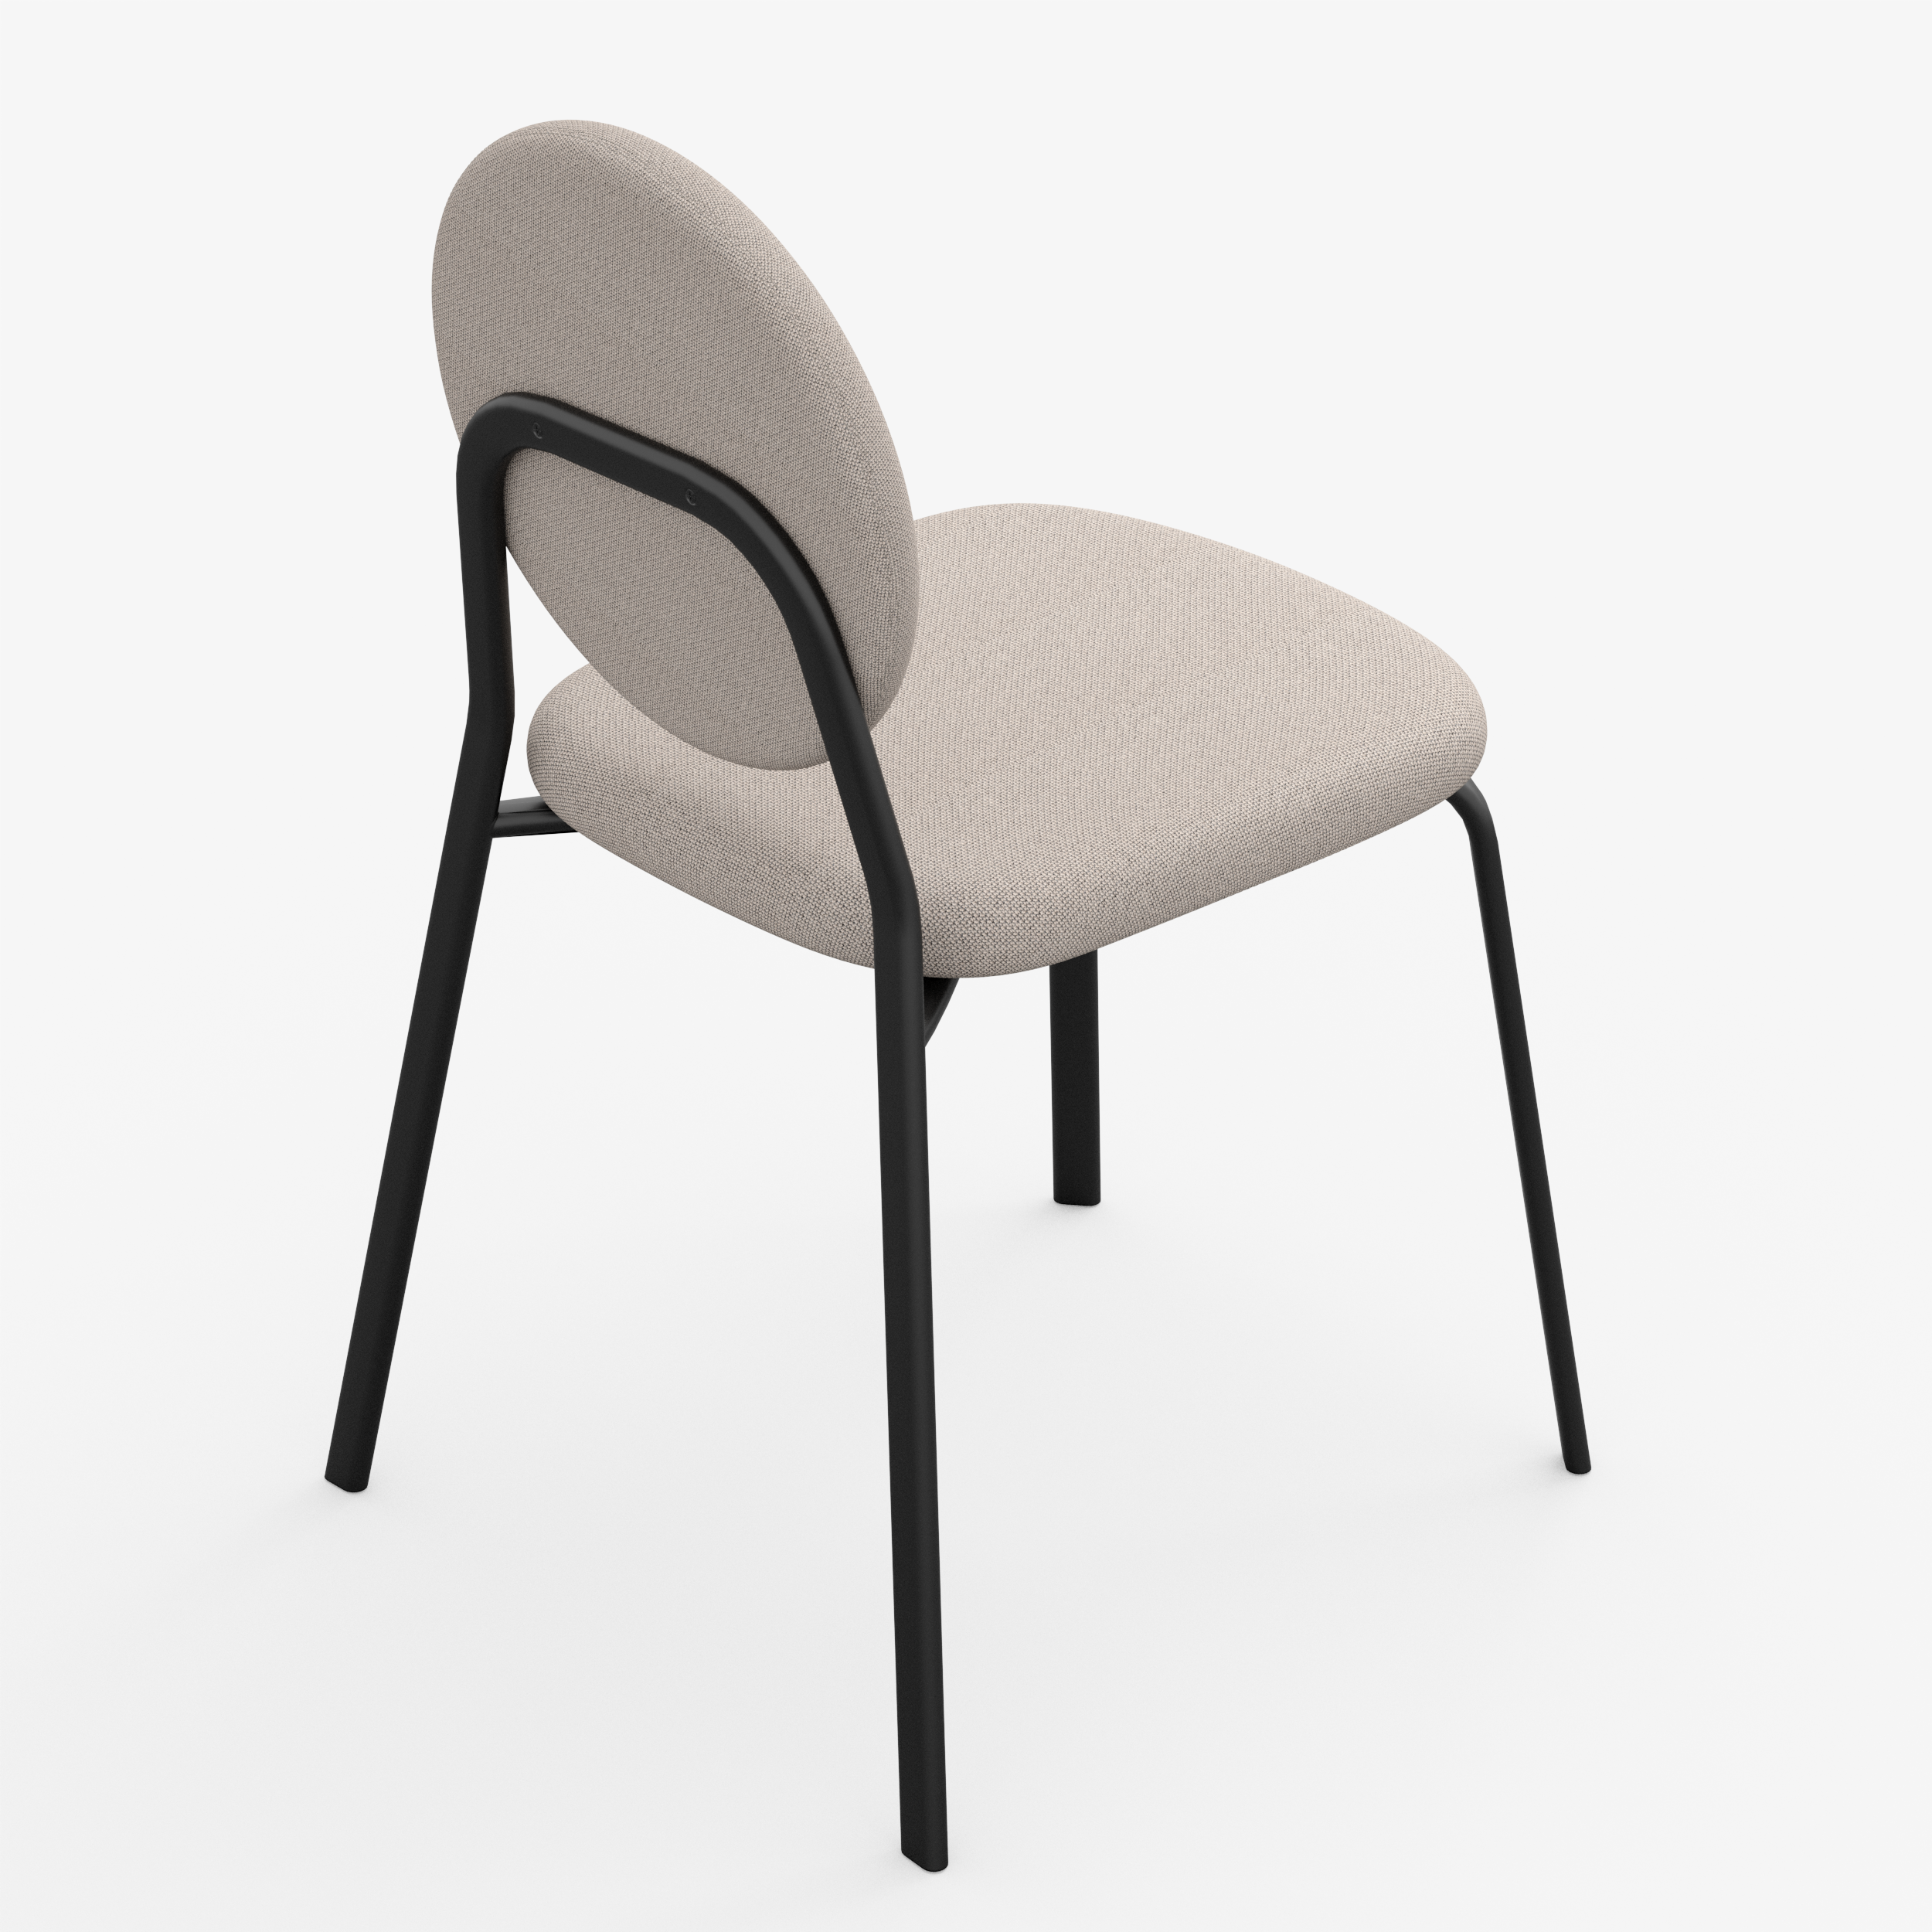 Form - Chair (Round, Beige)